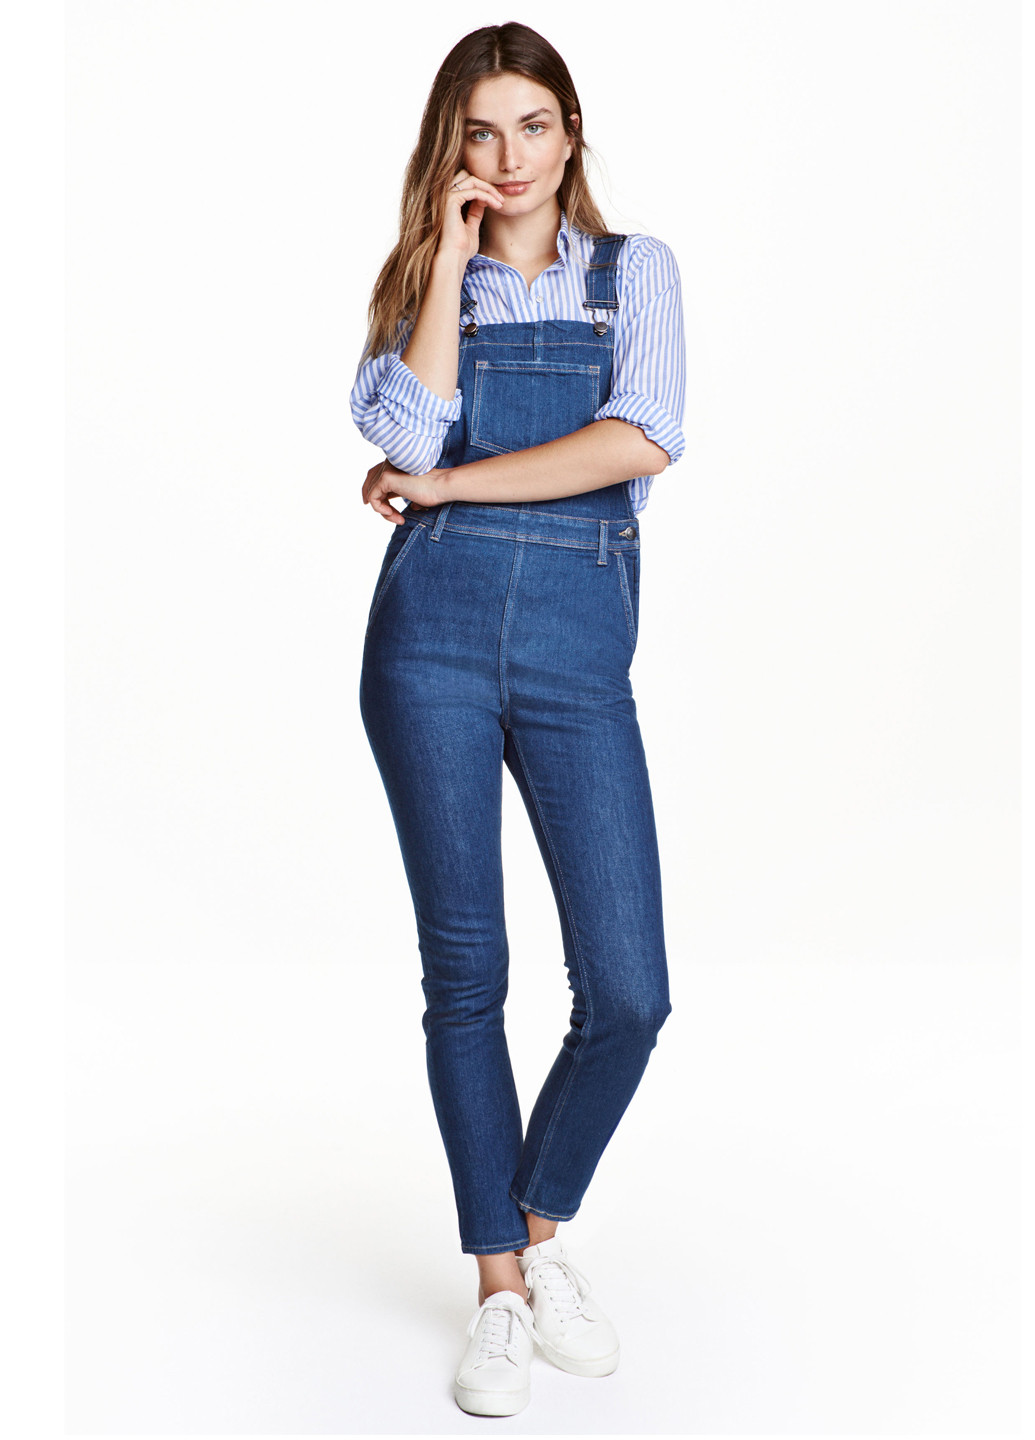 Комбінезон H&M комбінезон-брюки однотонний синій джинсовий